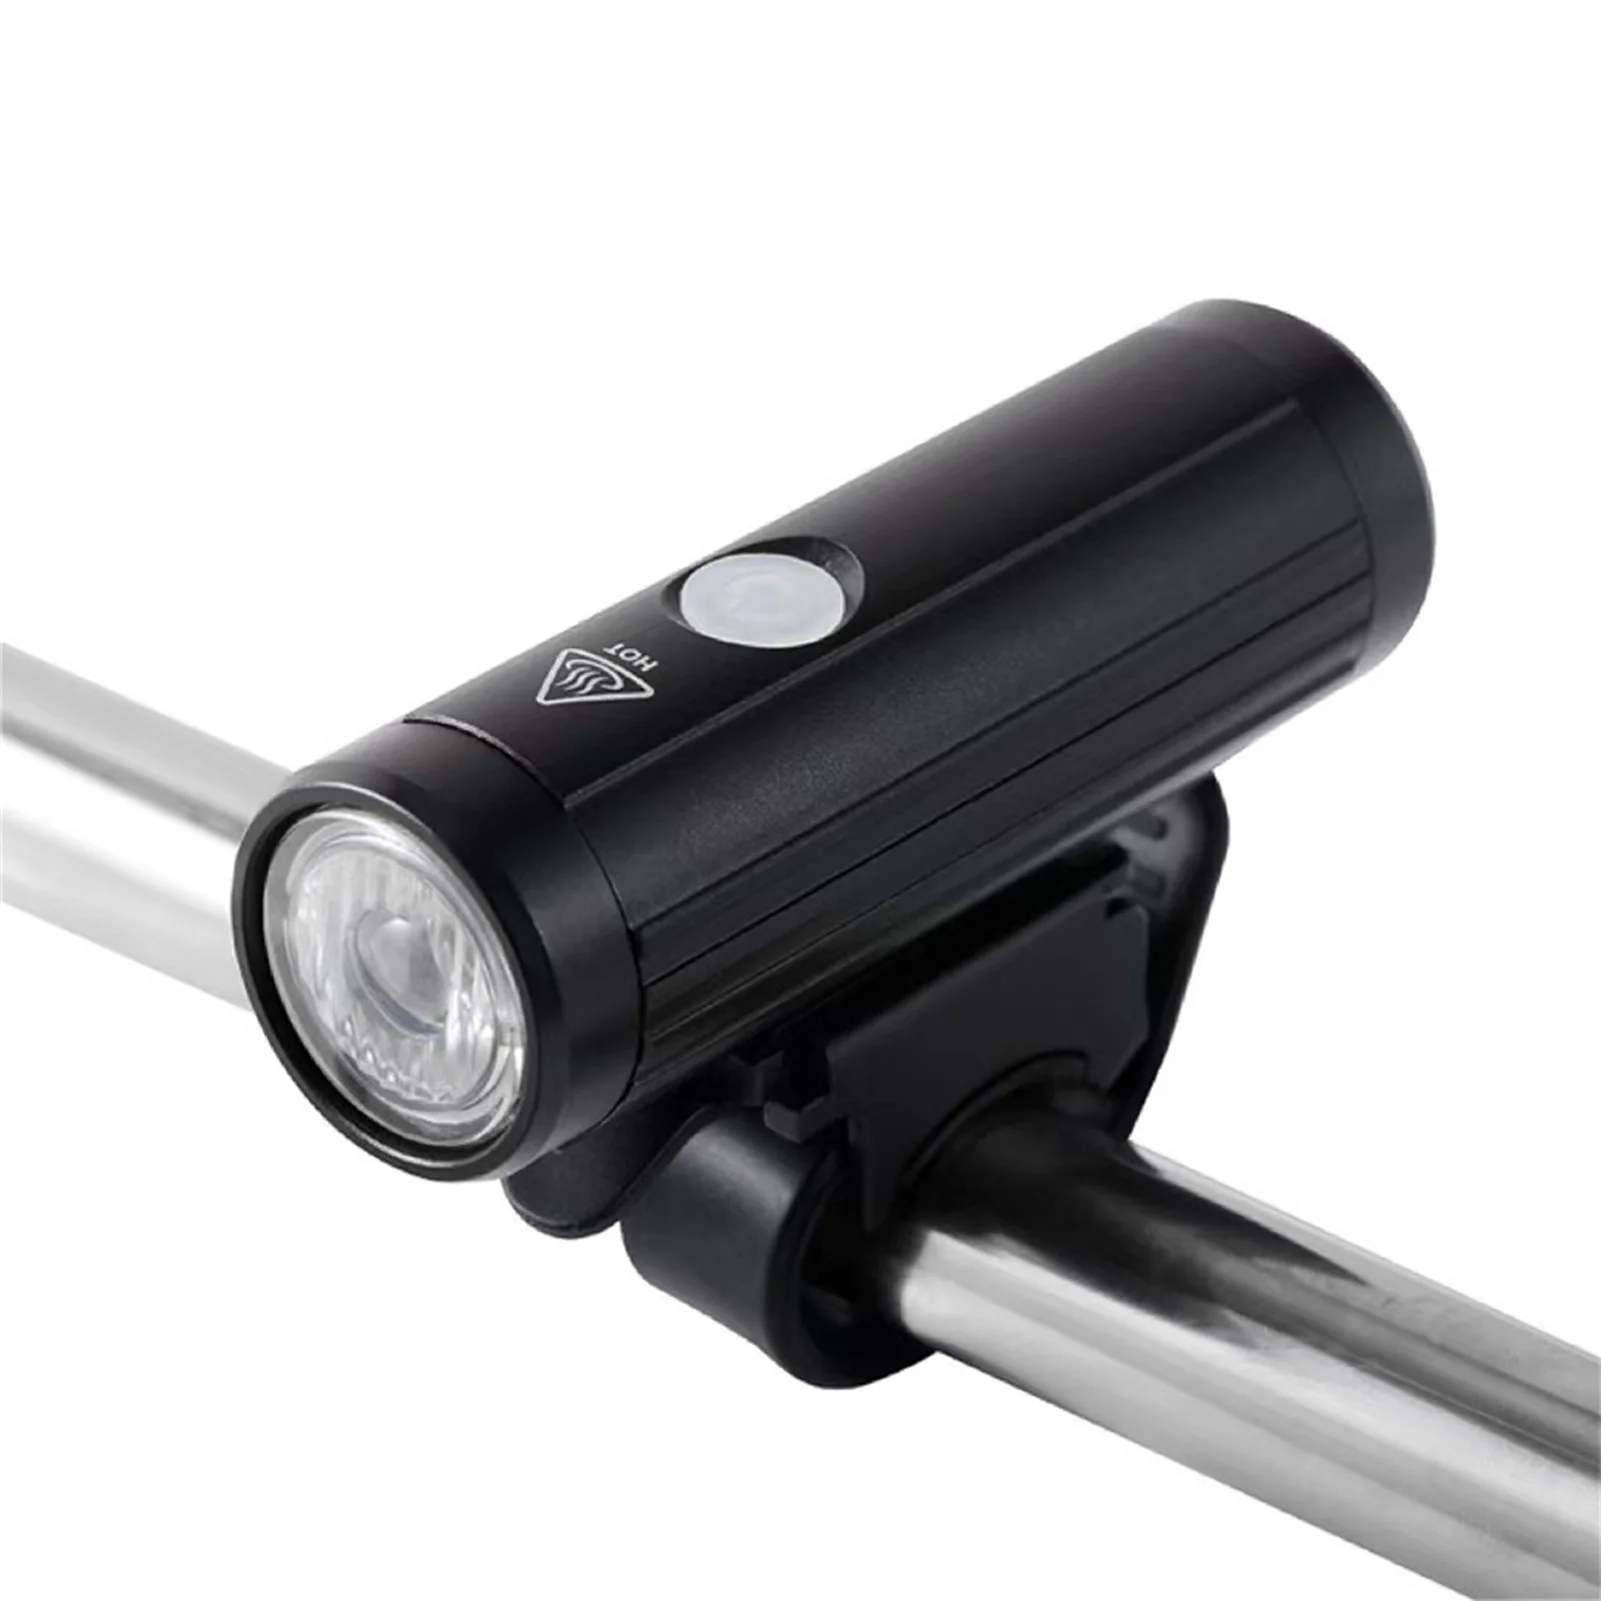 

Передние светодиодные фонари для велосипеда с 4 режимами, Высокоэффективная Быстрая зарядка через USB для кемпинга, походов, путешествий